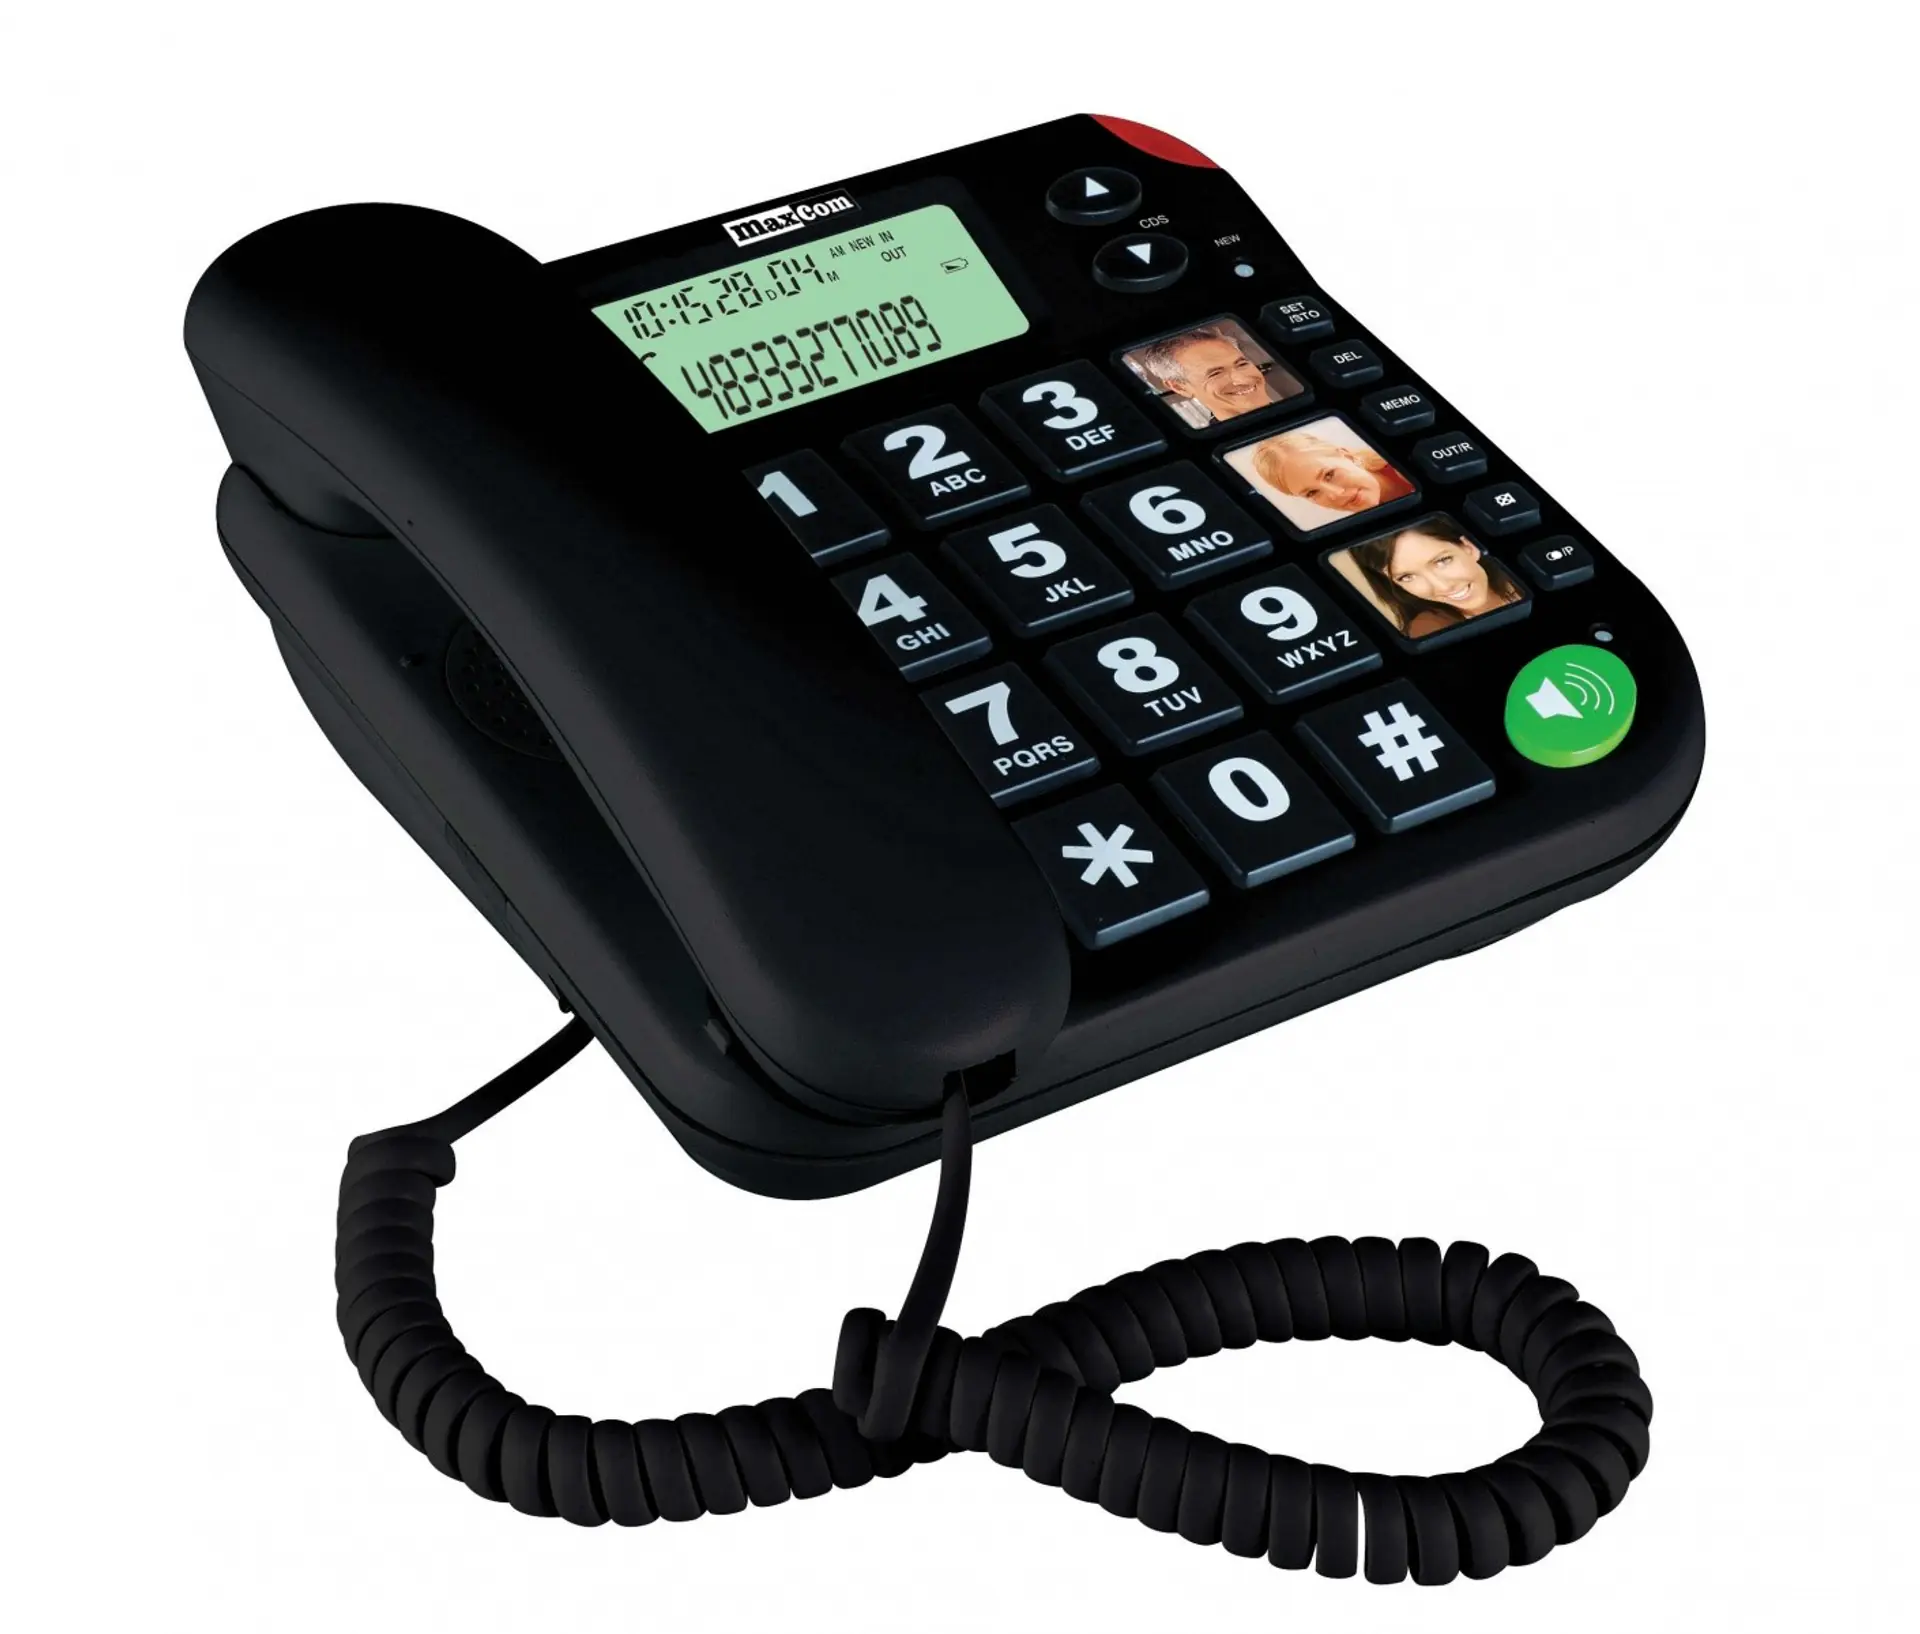 Куплю настольный телефон. Телефон Maxcom kxt480. Телефон Maxcom kxt709. Maxcom mm134. Телефон Maxcom mm426.